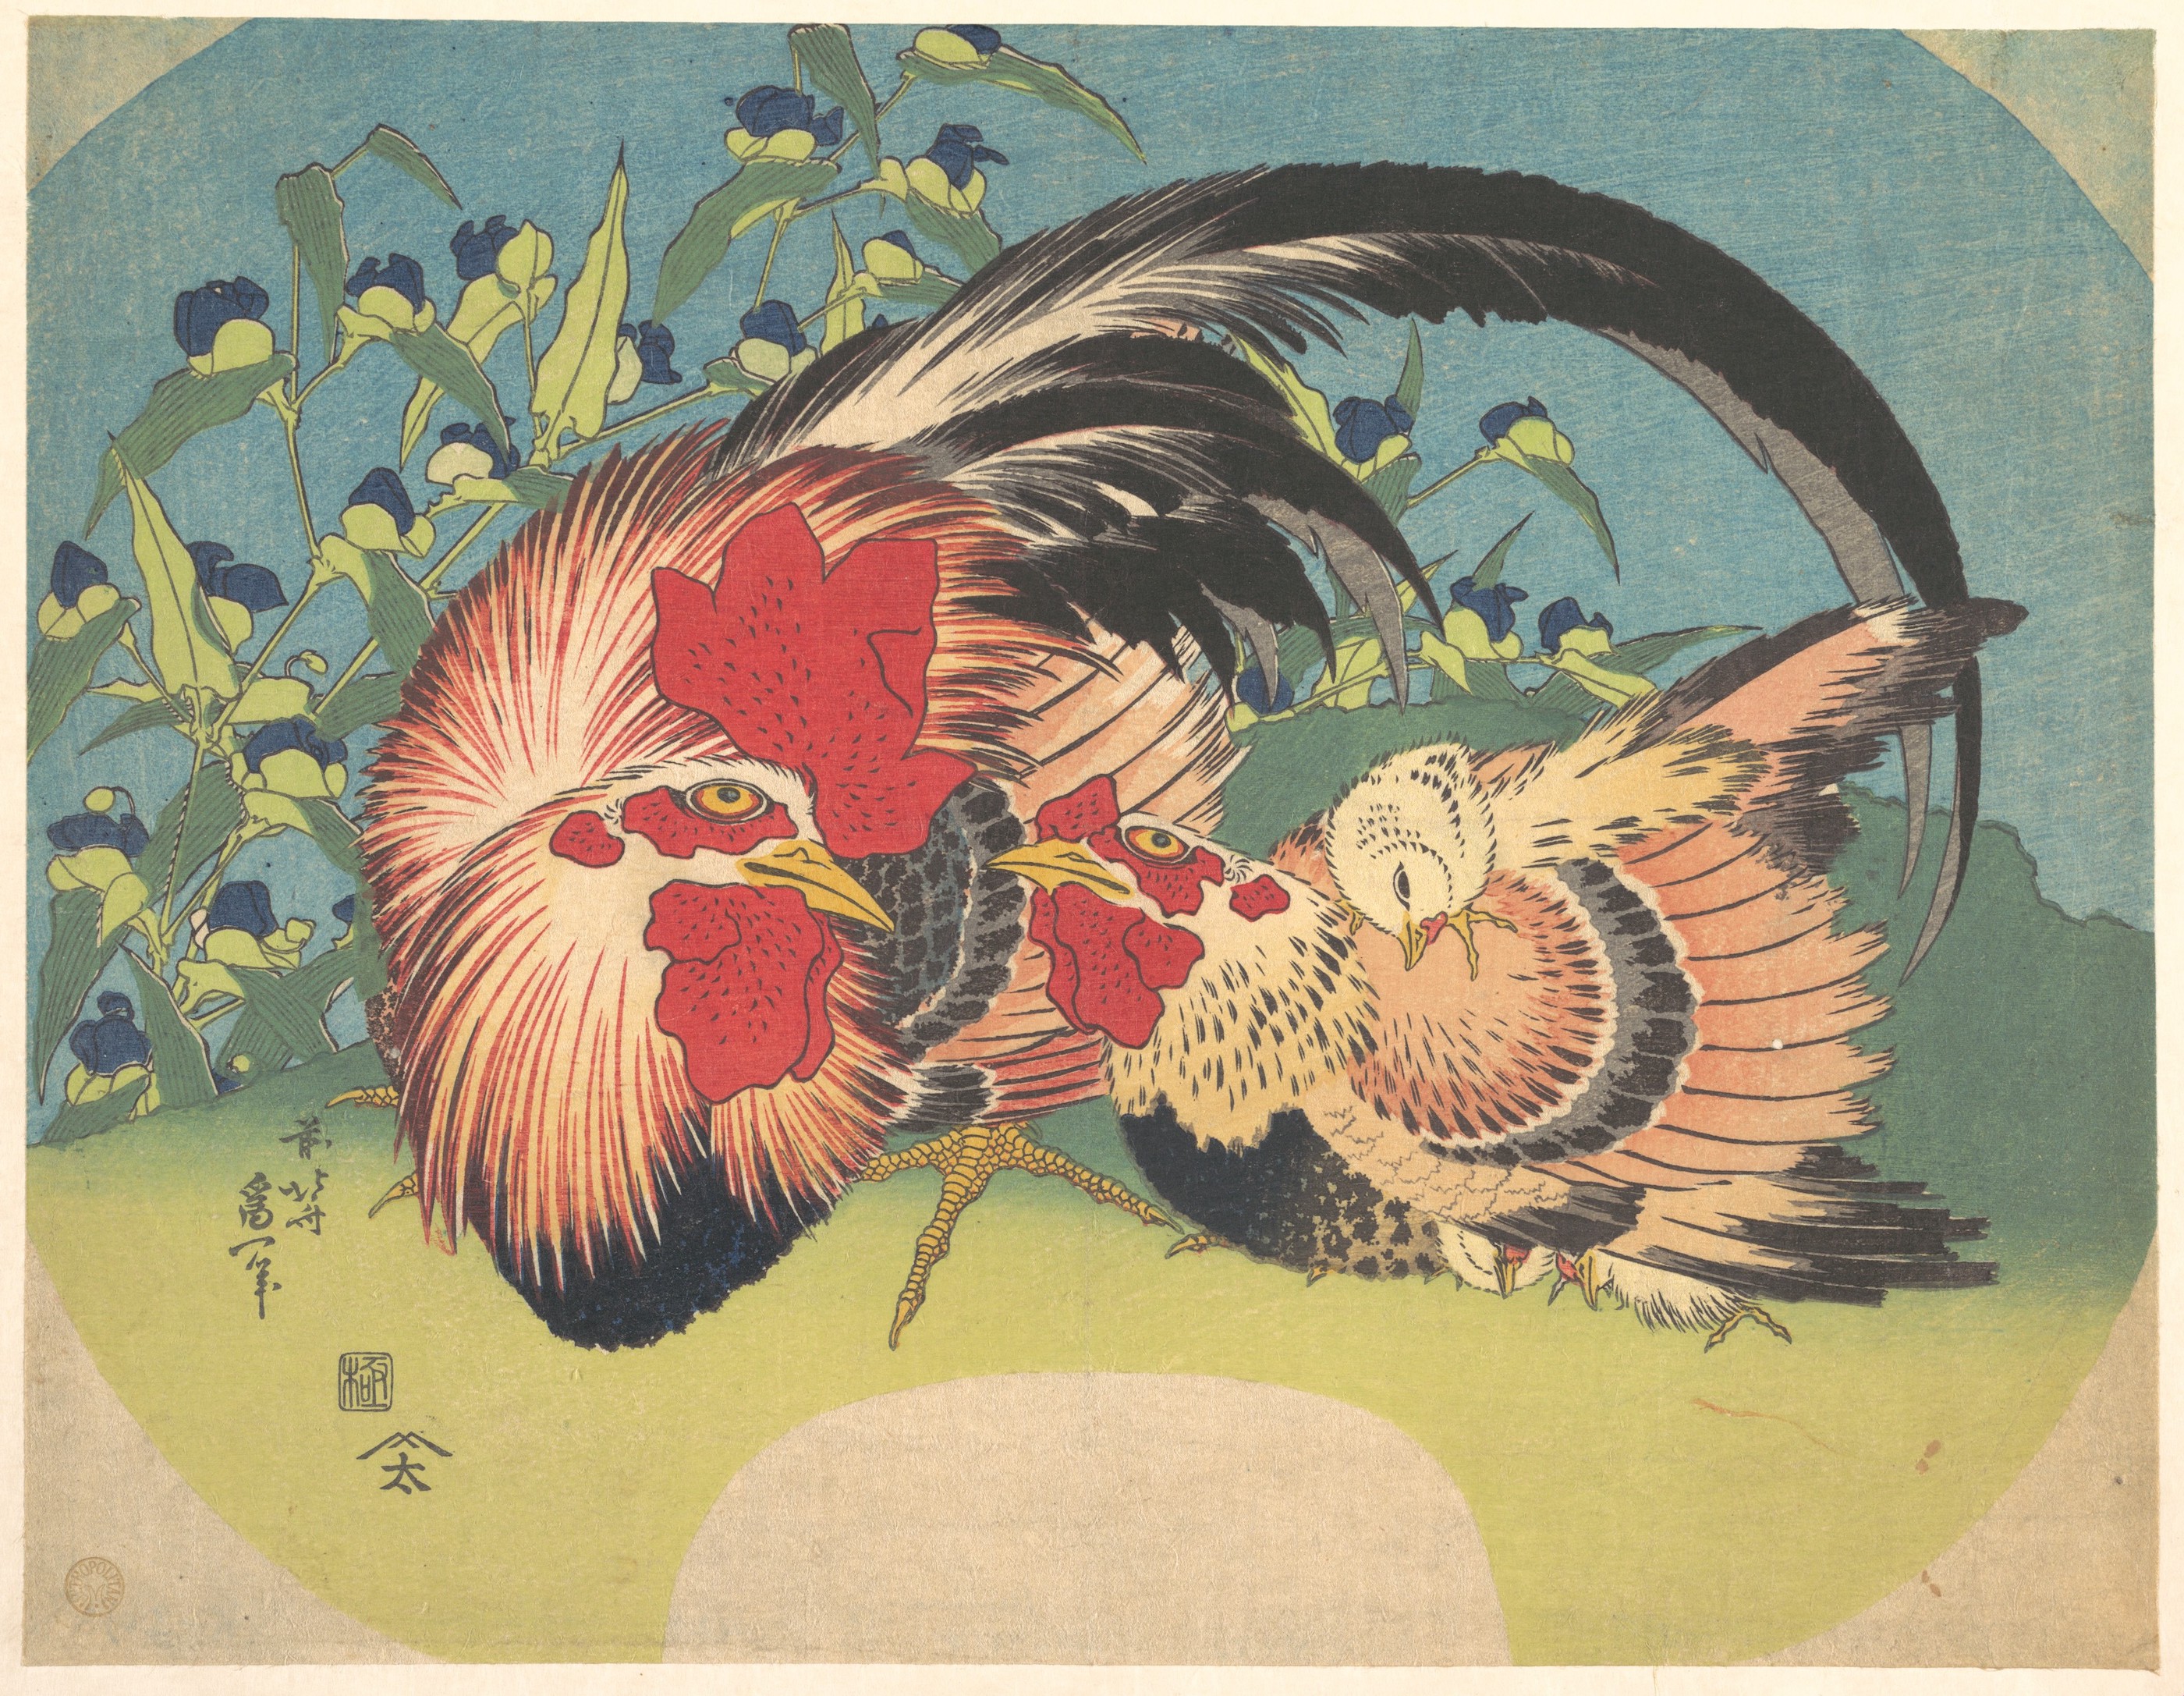 Kakas, tyúk és csirke kerti pletyka virággal by Katsushika Hokusai - 1830–33 körül - 22,9 x 29,2 cm 